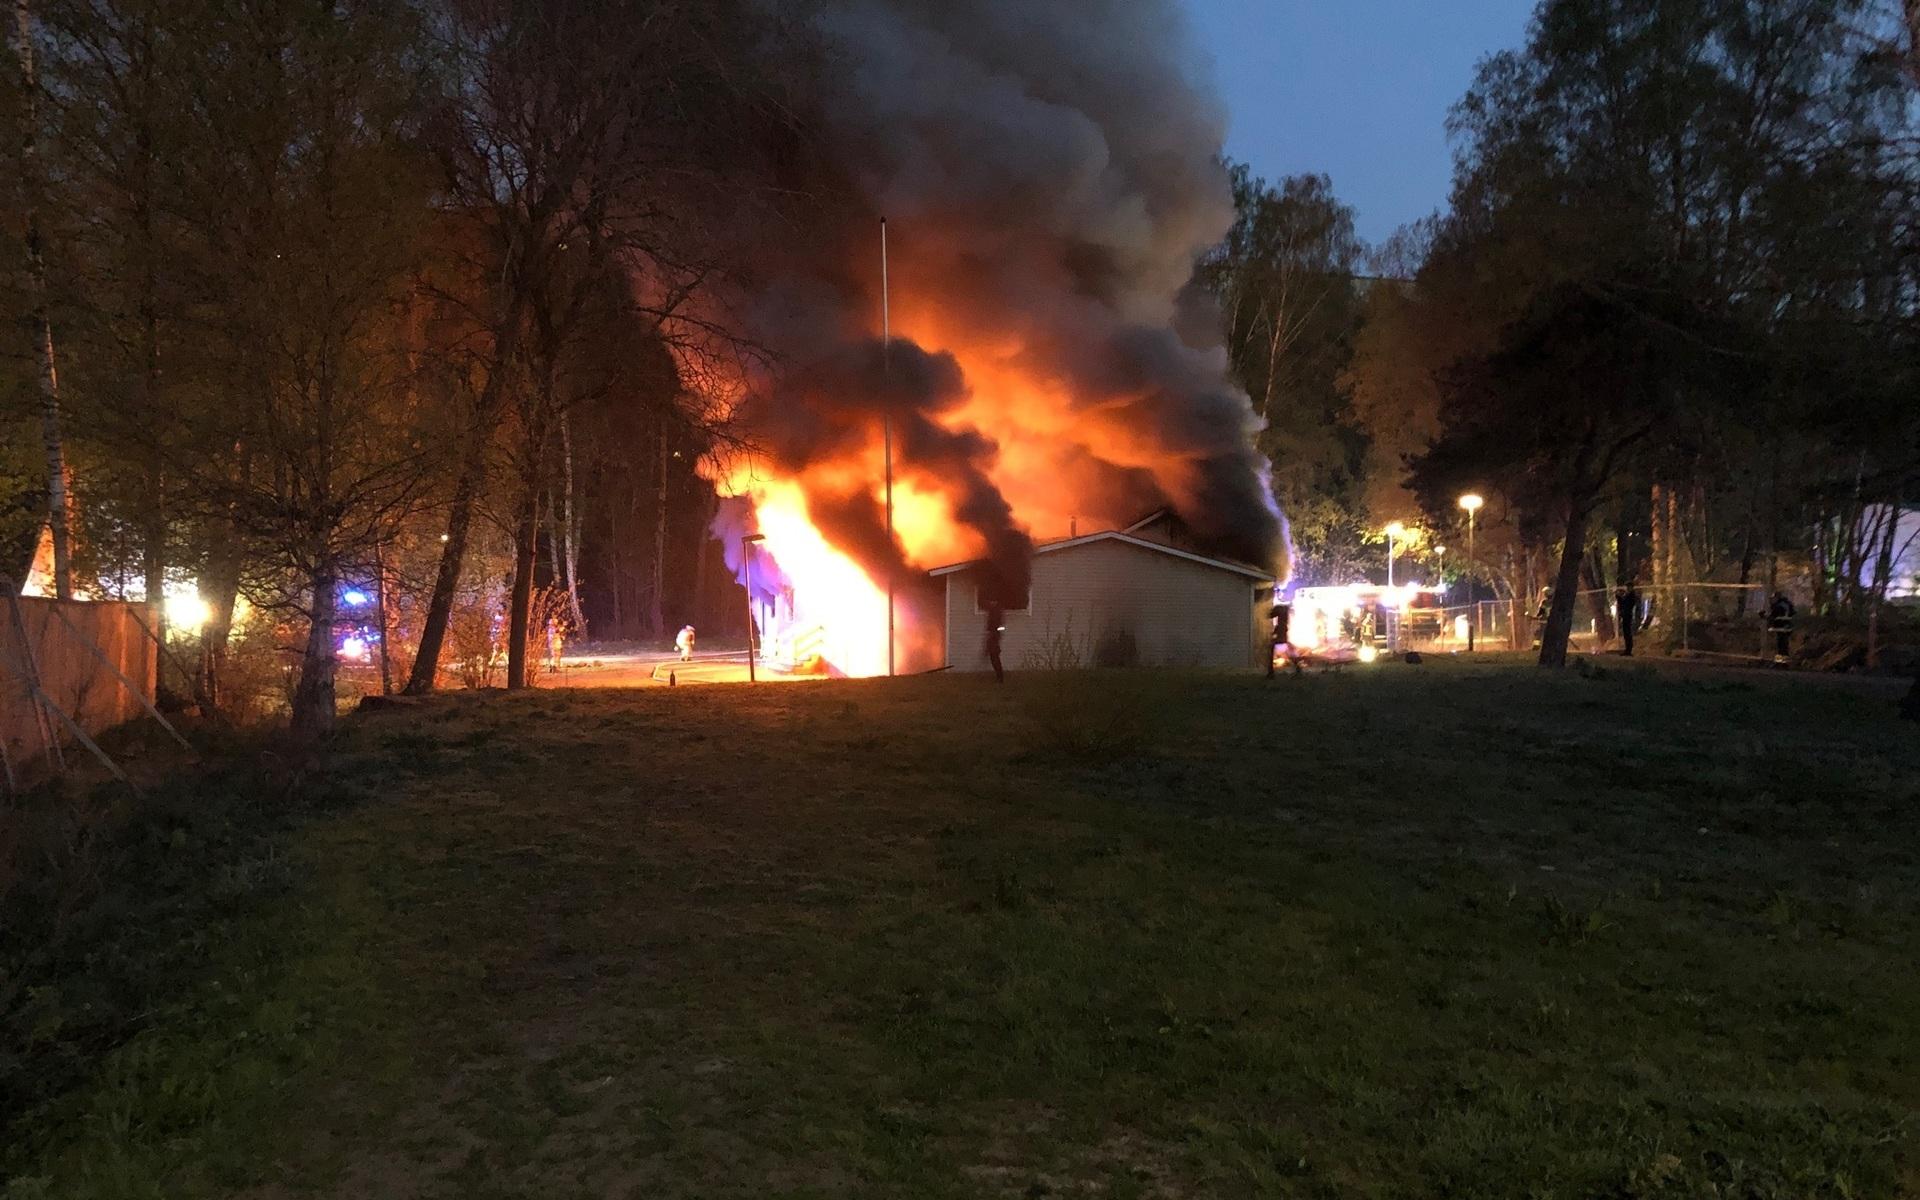 Det var strax innan klockan tre under natten mot fredag som larmet om att en scoutgård i Biskopsgården brann kraftigt.